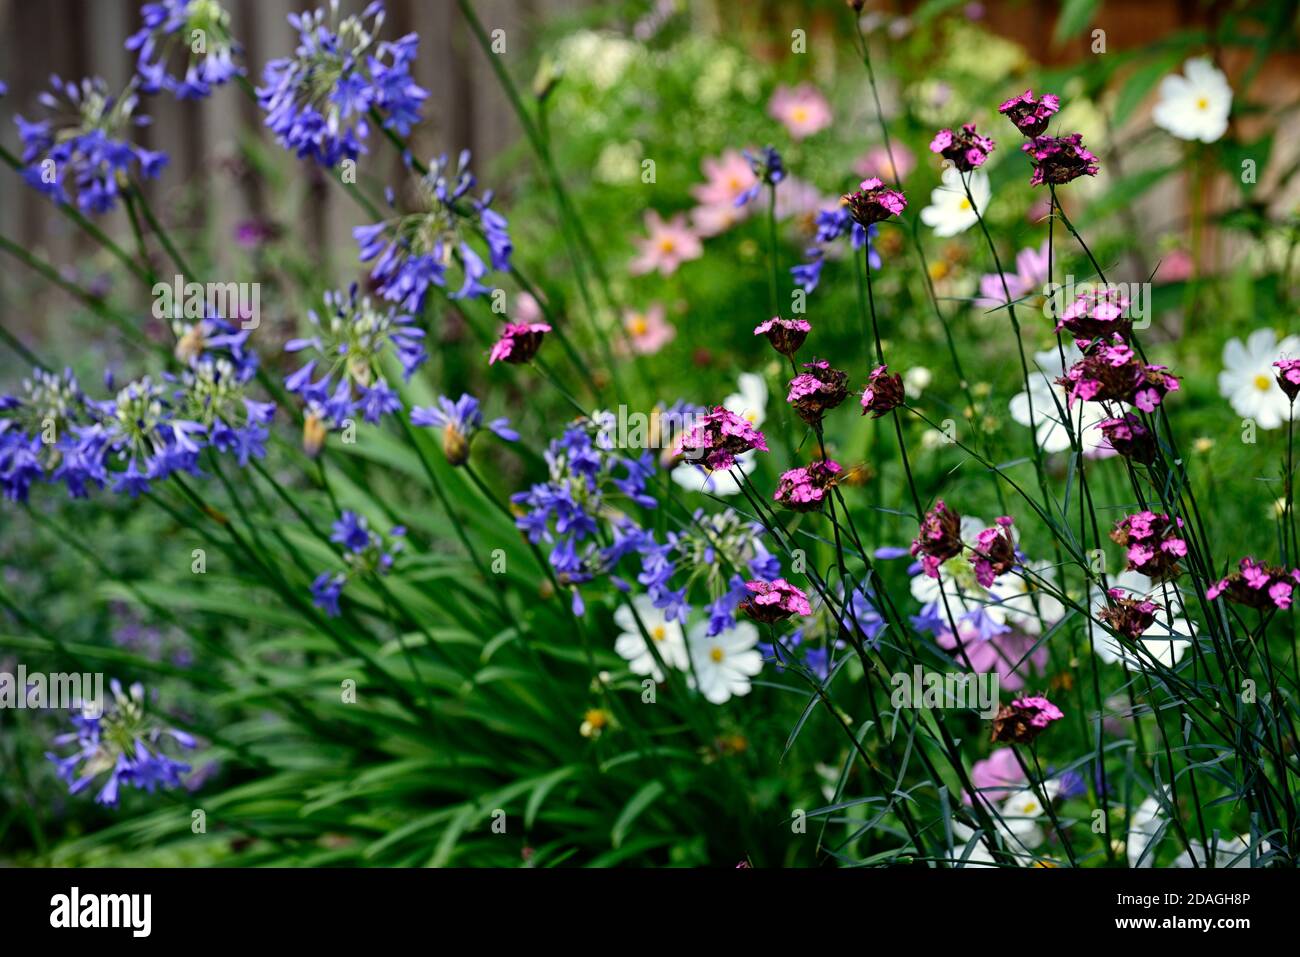 Dianthus carthusianorum,Rosa certosina,Agapanthus inapertus,fiori blu agapanthus,perenni,confini misti,giardino,giardini,fioritura,RM Floral Foto Stock